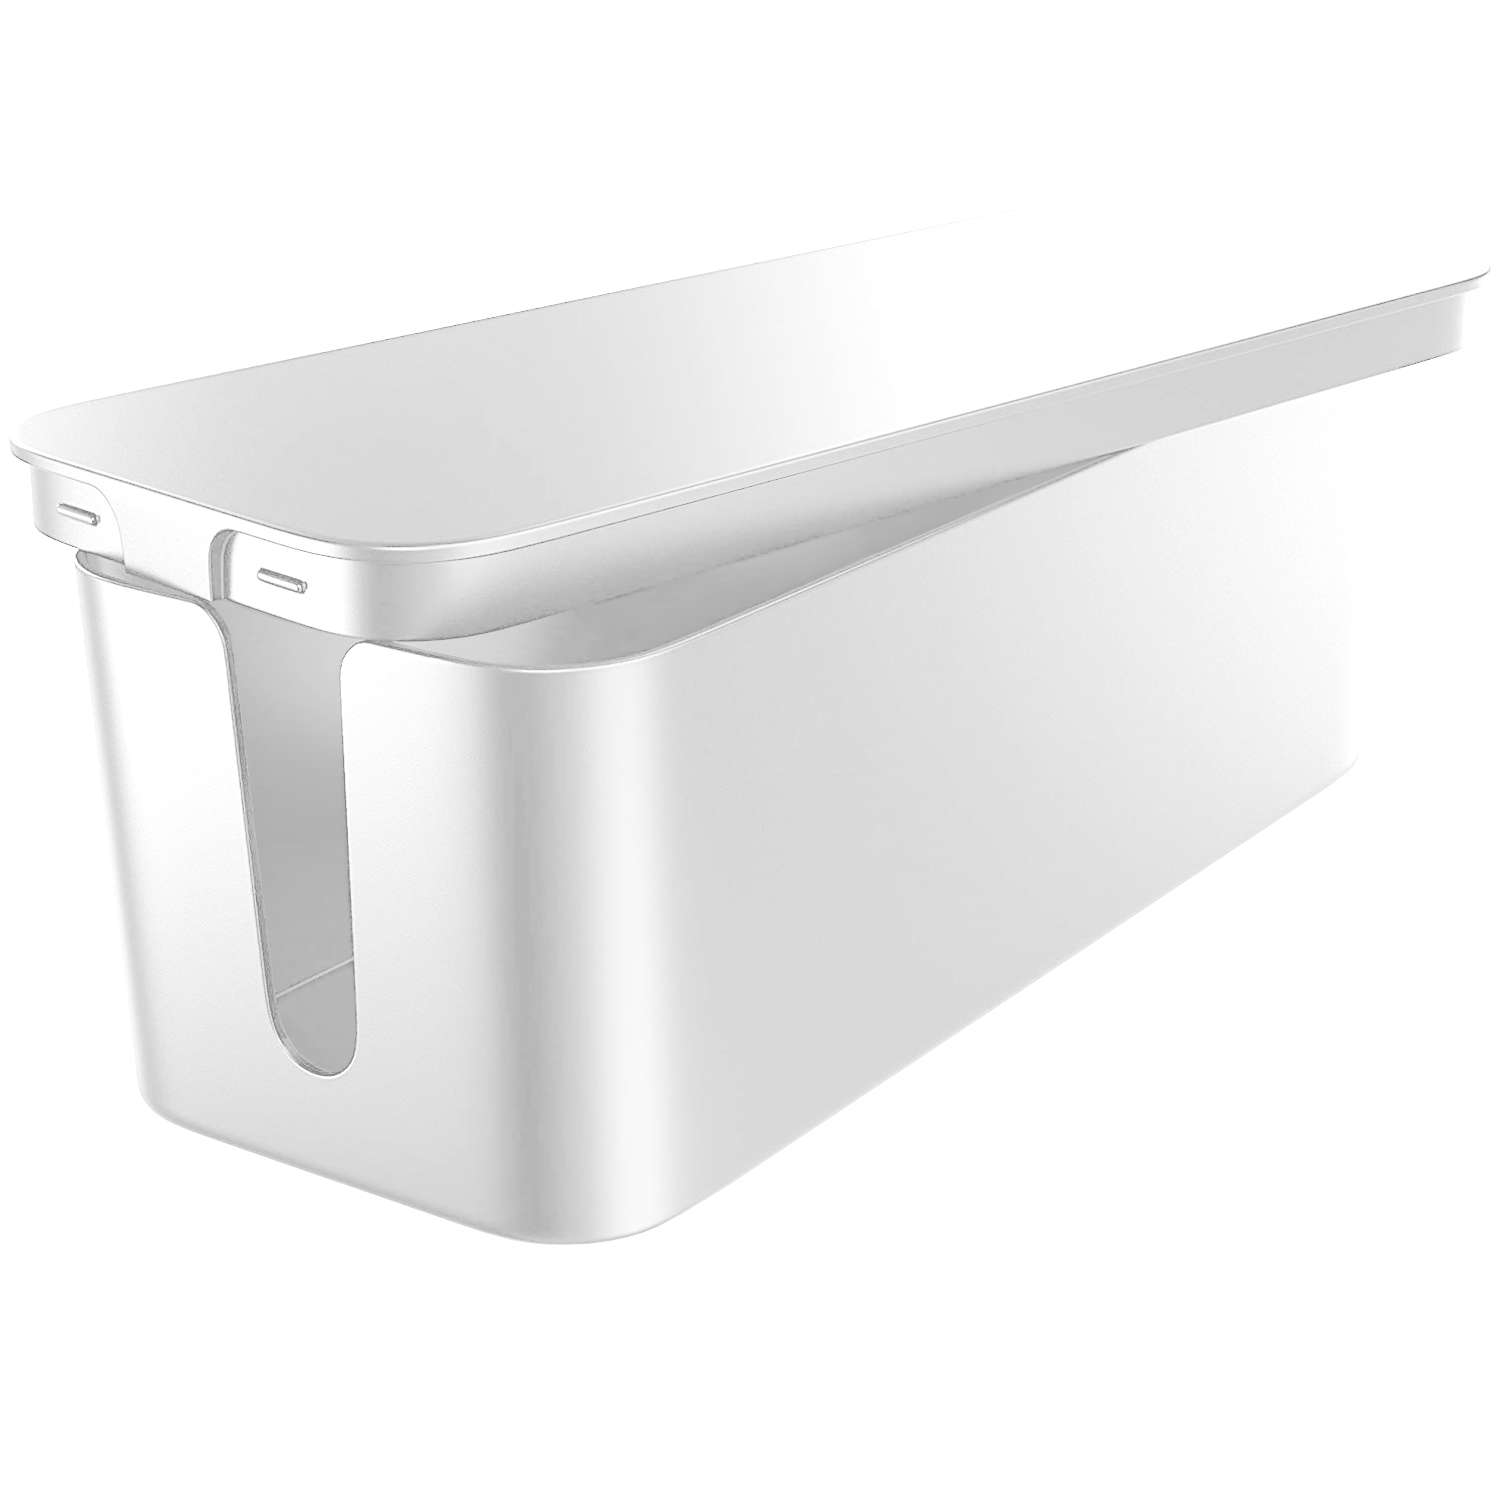 Kabel-Organizer, Schreibtisch-Bodenbehälter für Kabel, Lamellen, Alogy Box  M, 31 cm, Weiß 